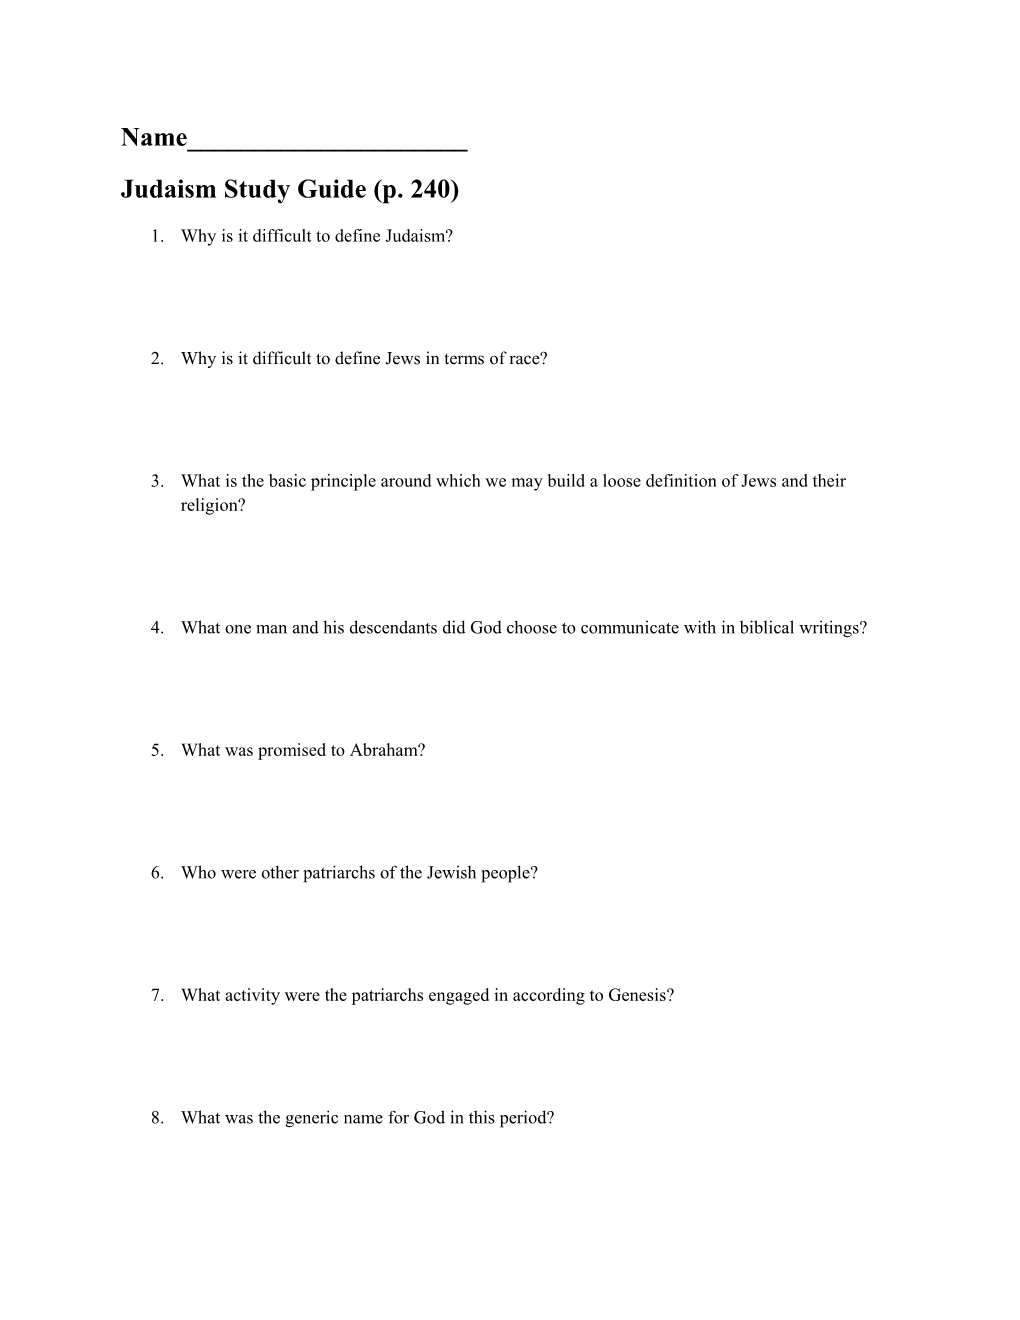 Judaism Study Guide (P. 240)